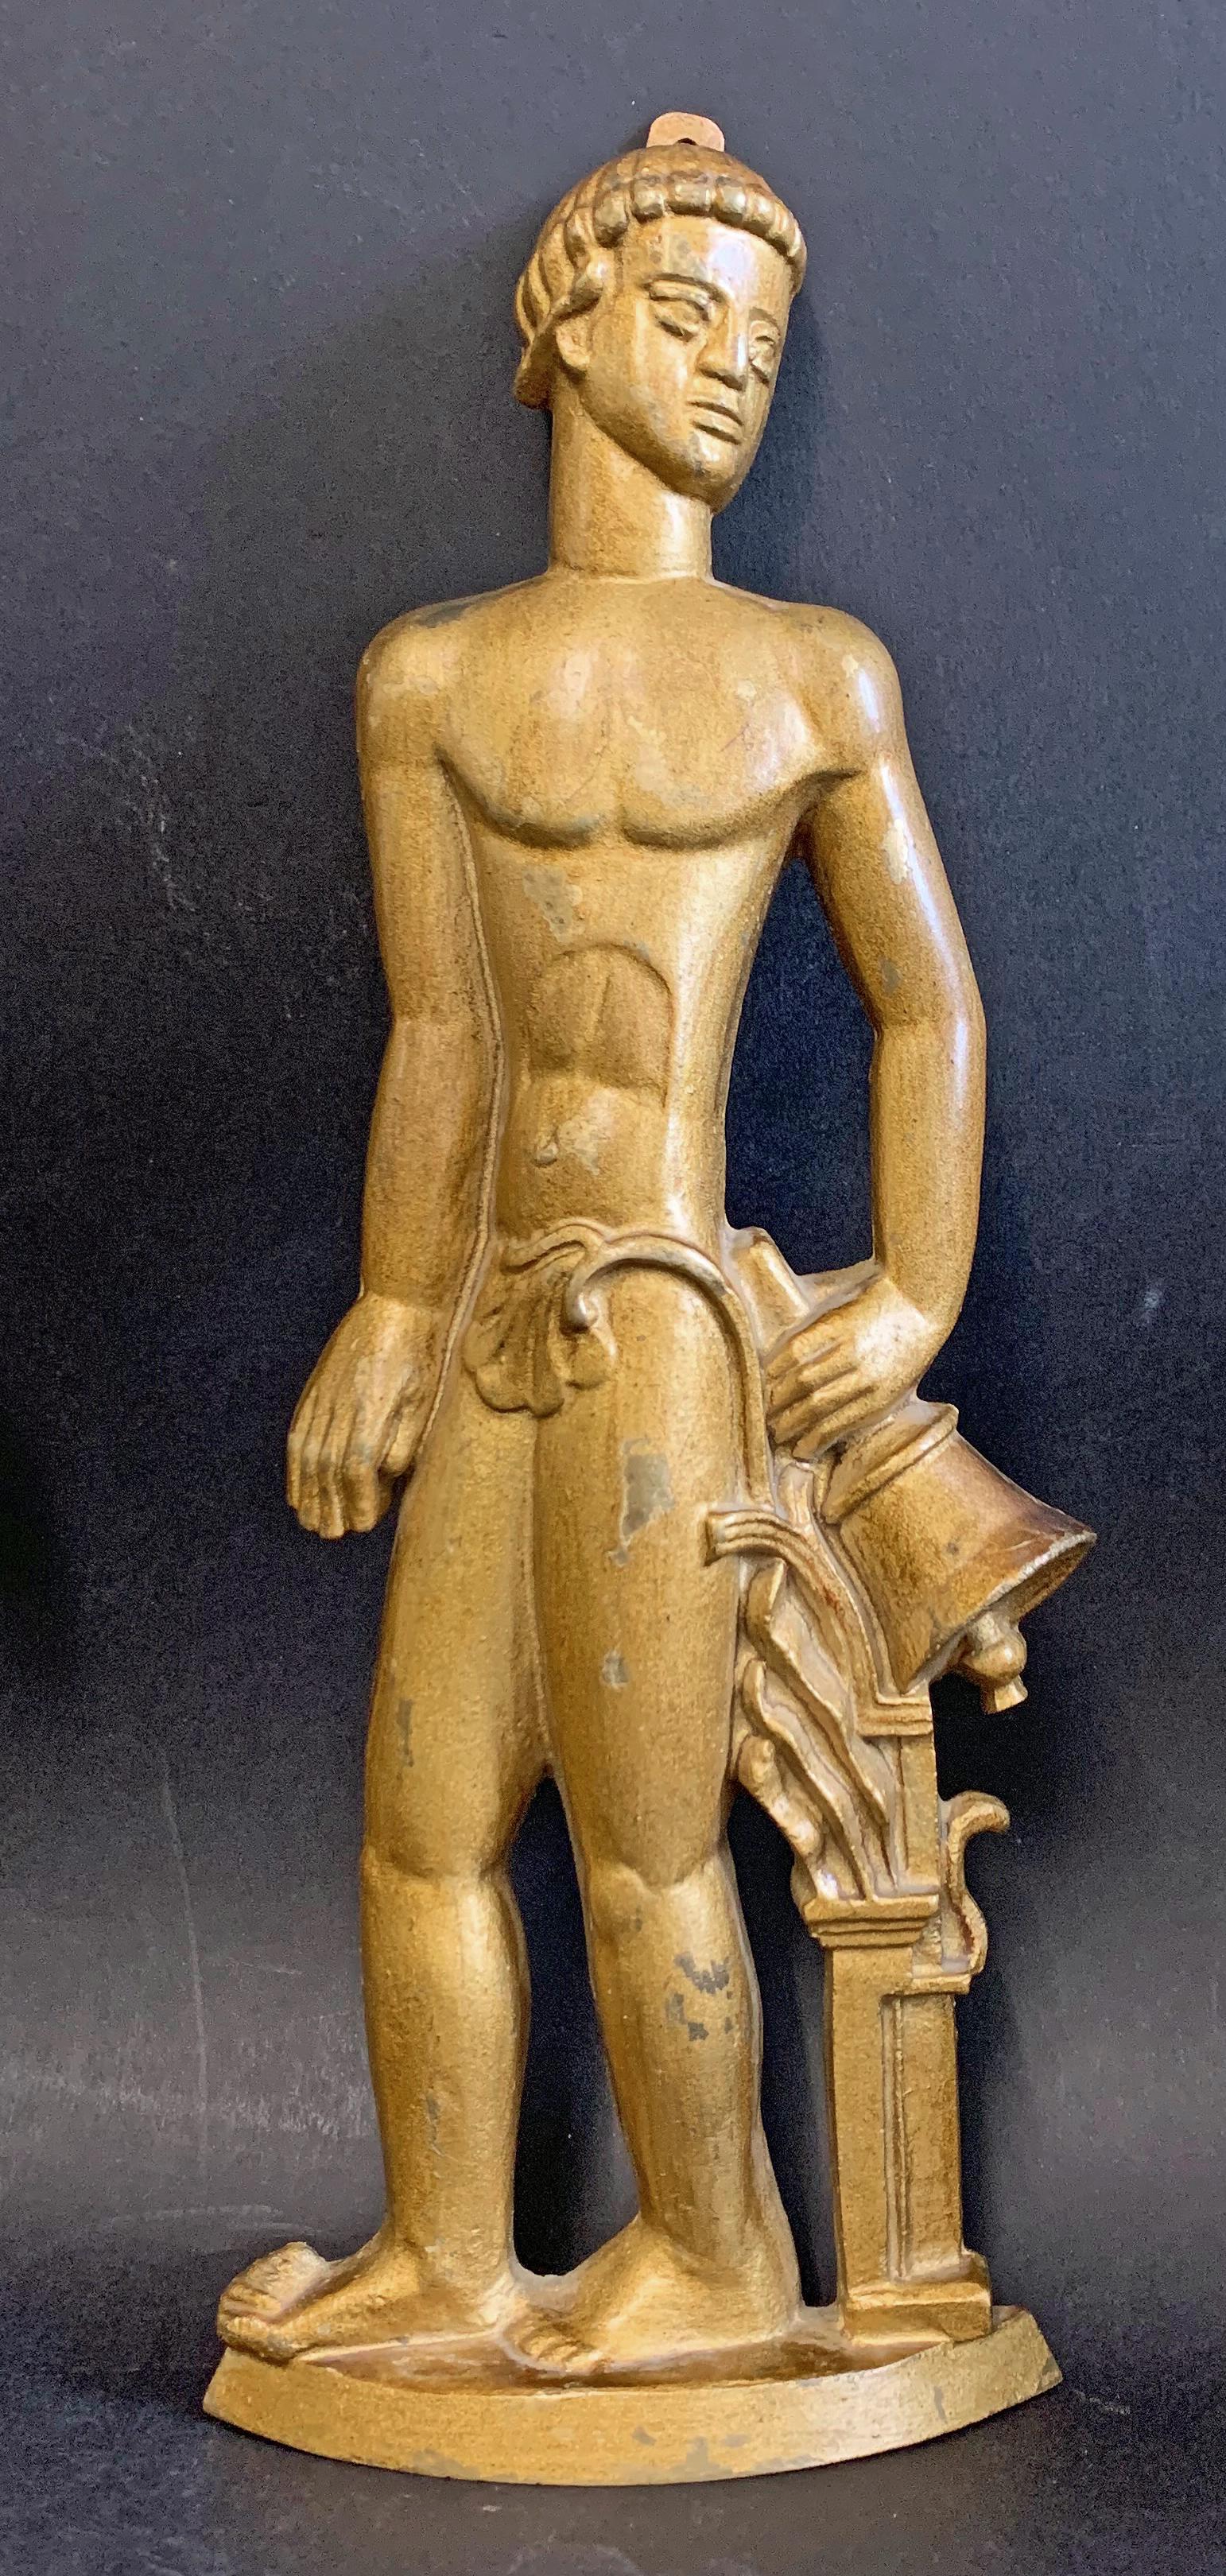 Magnifiquement sculptée, moulée et finie, cette paire de sculptures en bas-relief Grace suédoises datant de 1930 représente des figures allégoriques nues, un homme et une femme, chacune étant finie dans une patine chaude et dorée. Le personnage